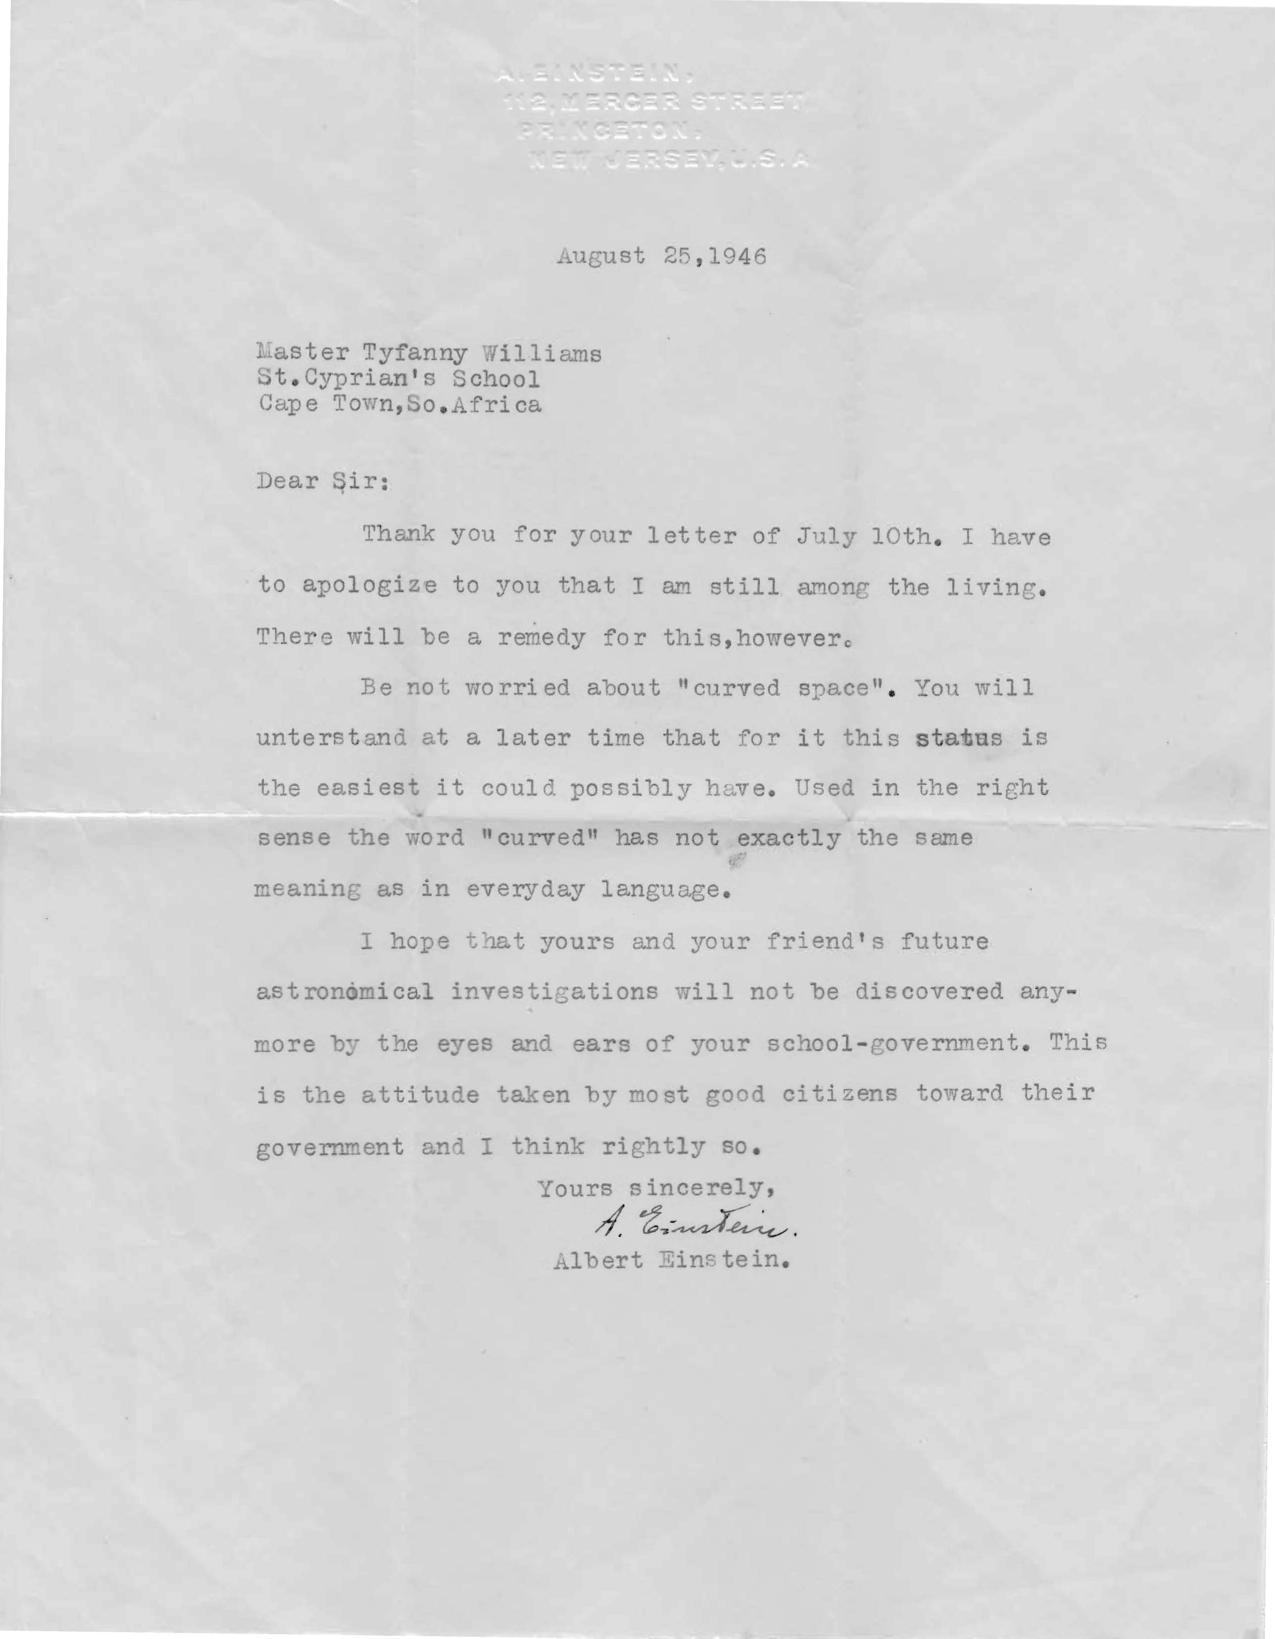 Einstein's Letter to Van 1946-08-25 no image adjustment